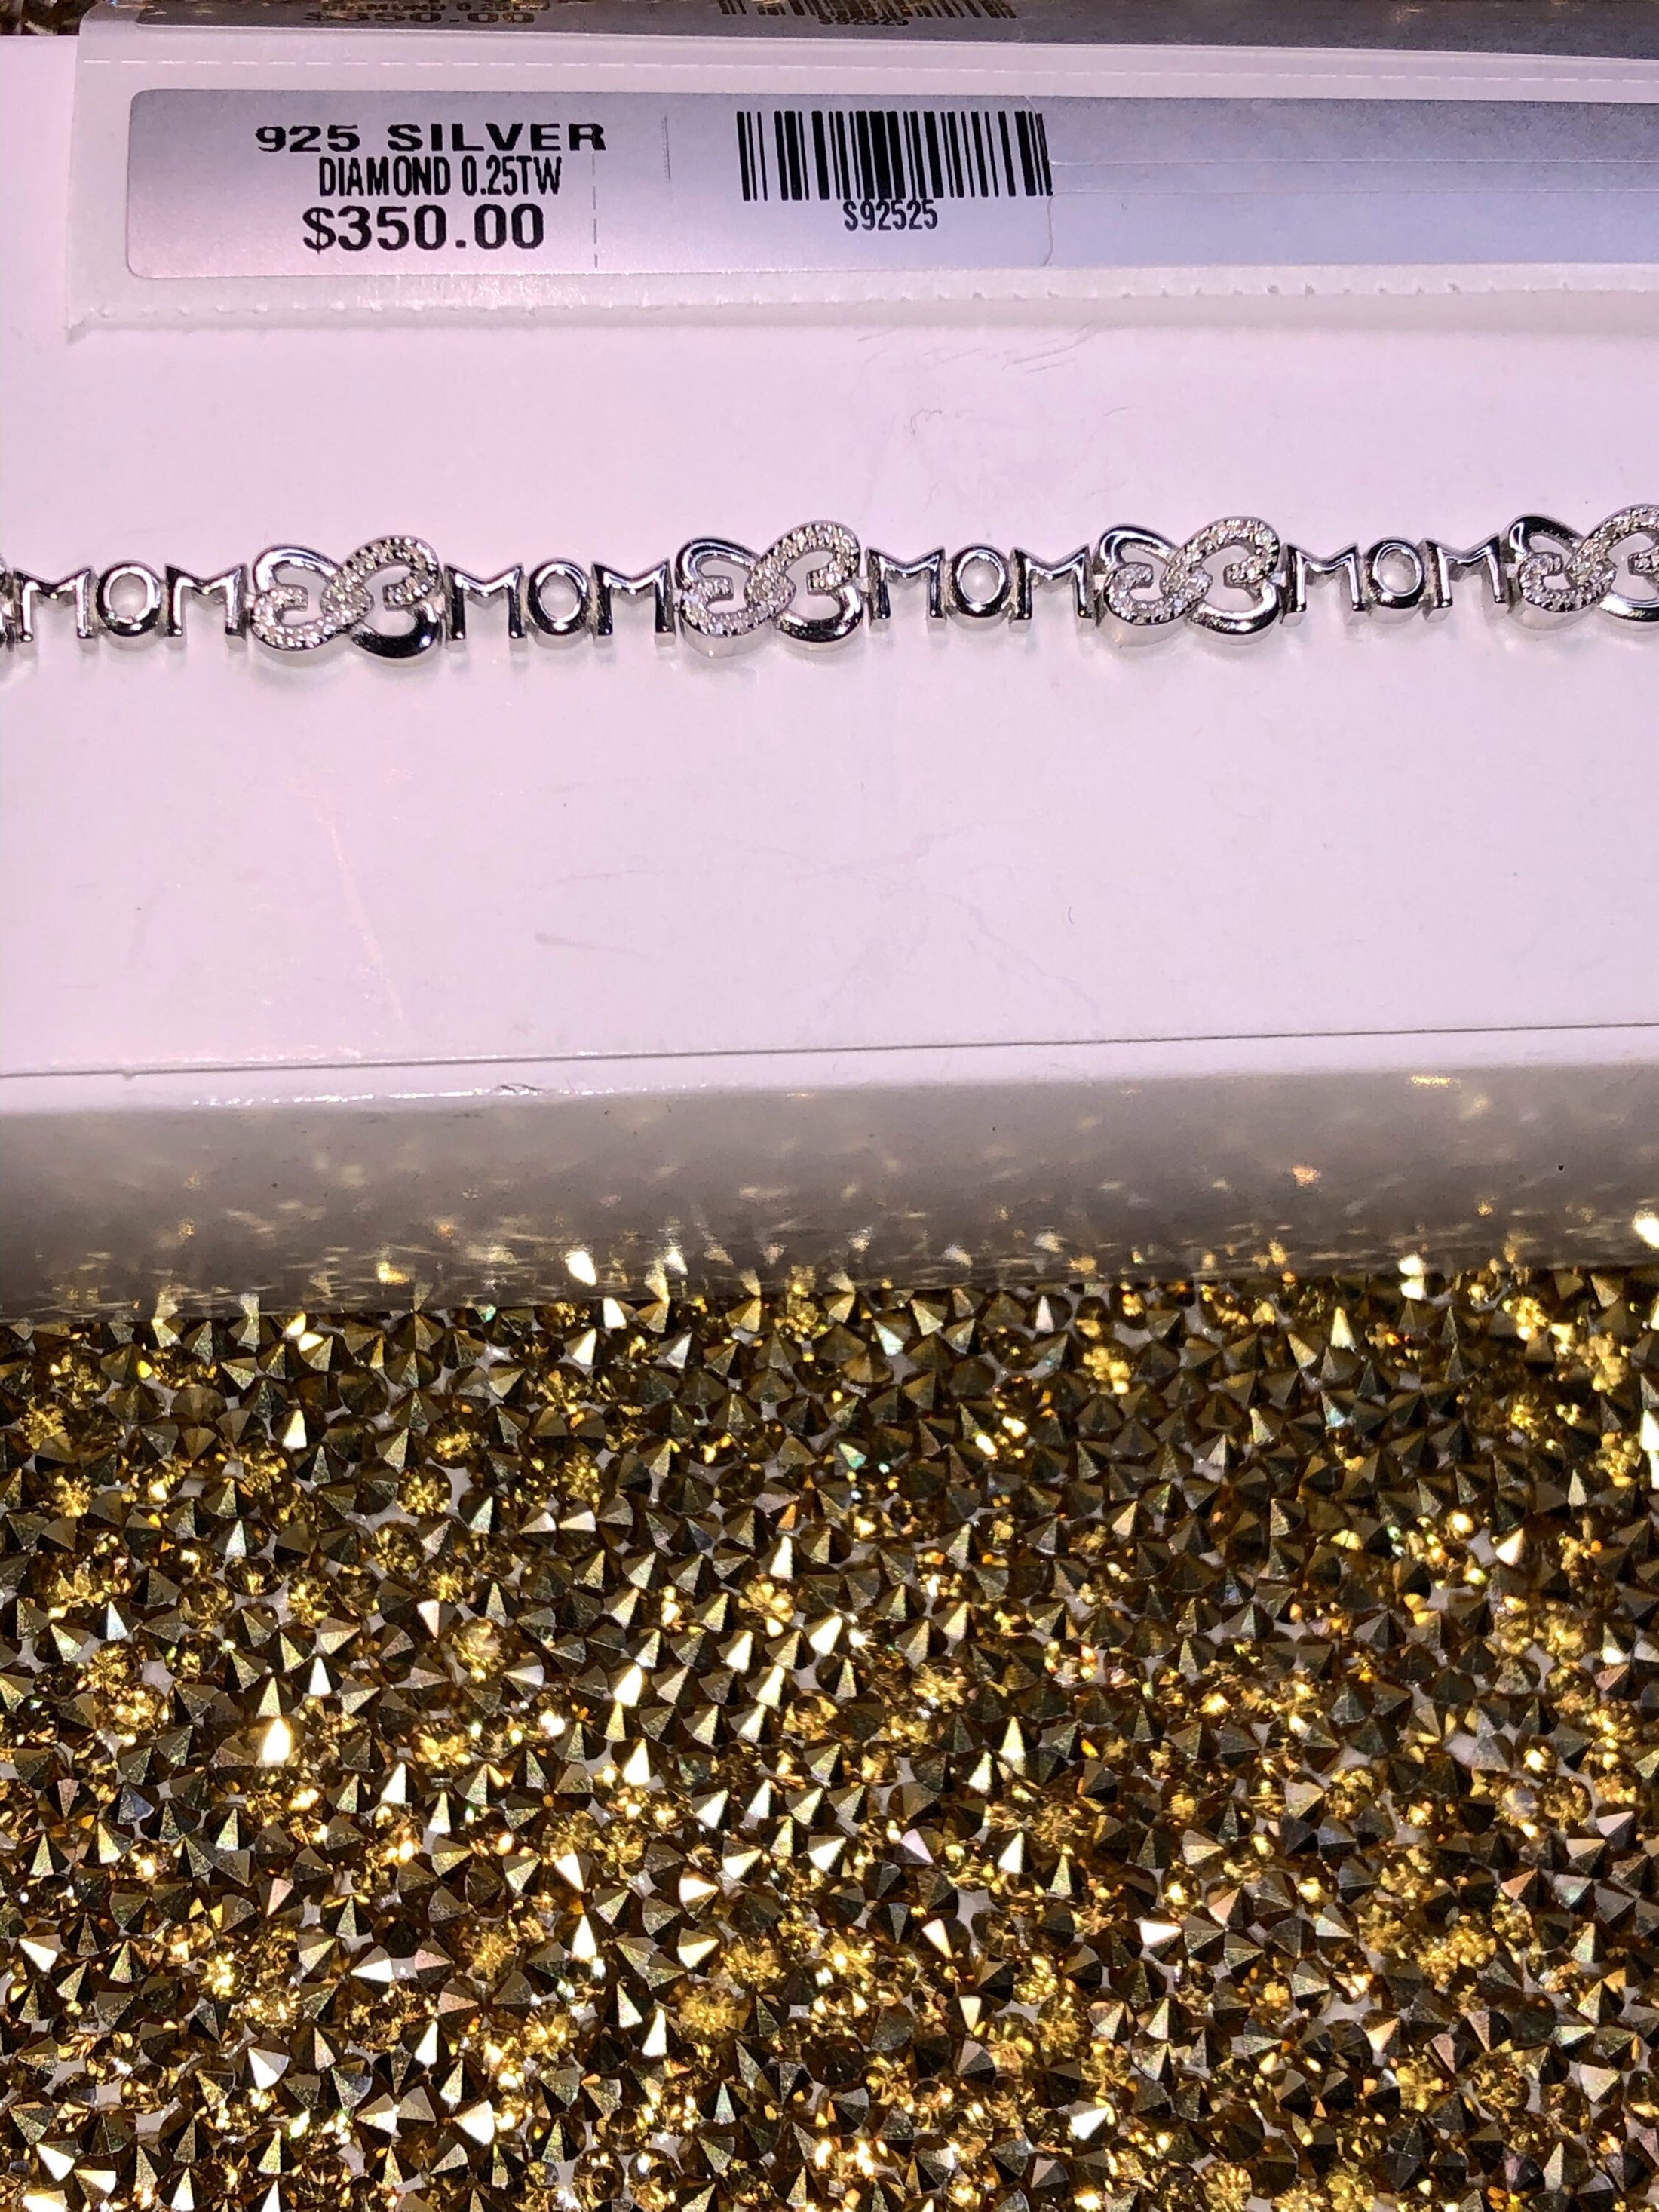 10k White Gold Vermeil | Diamond Bracelet For Mom | Mom Bracelet | For Her | For Mom | Christmas Gift